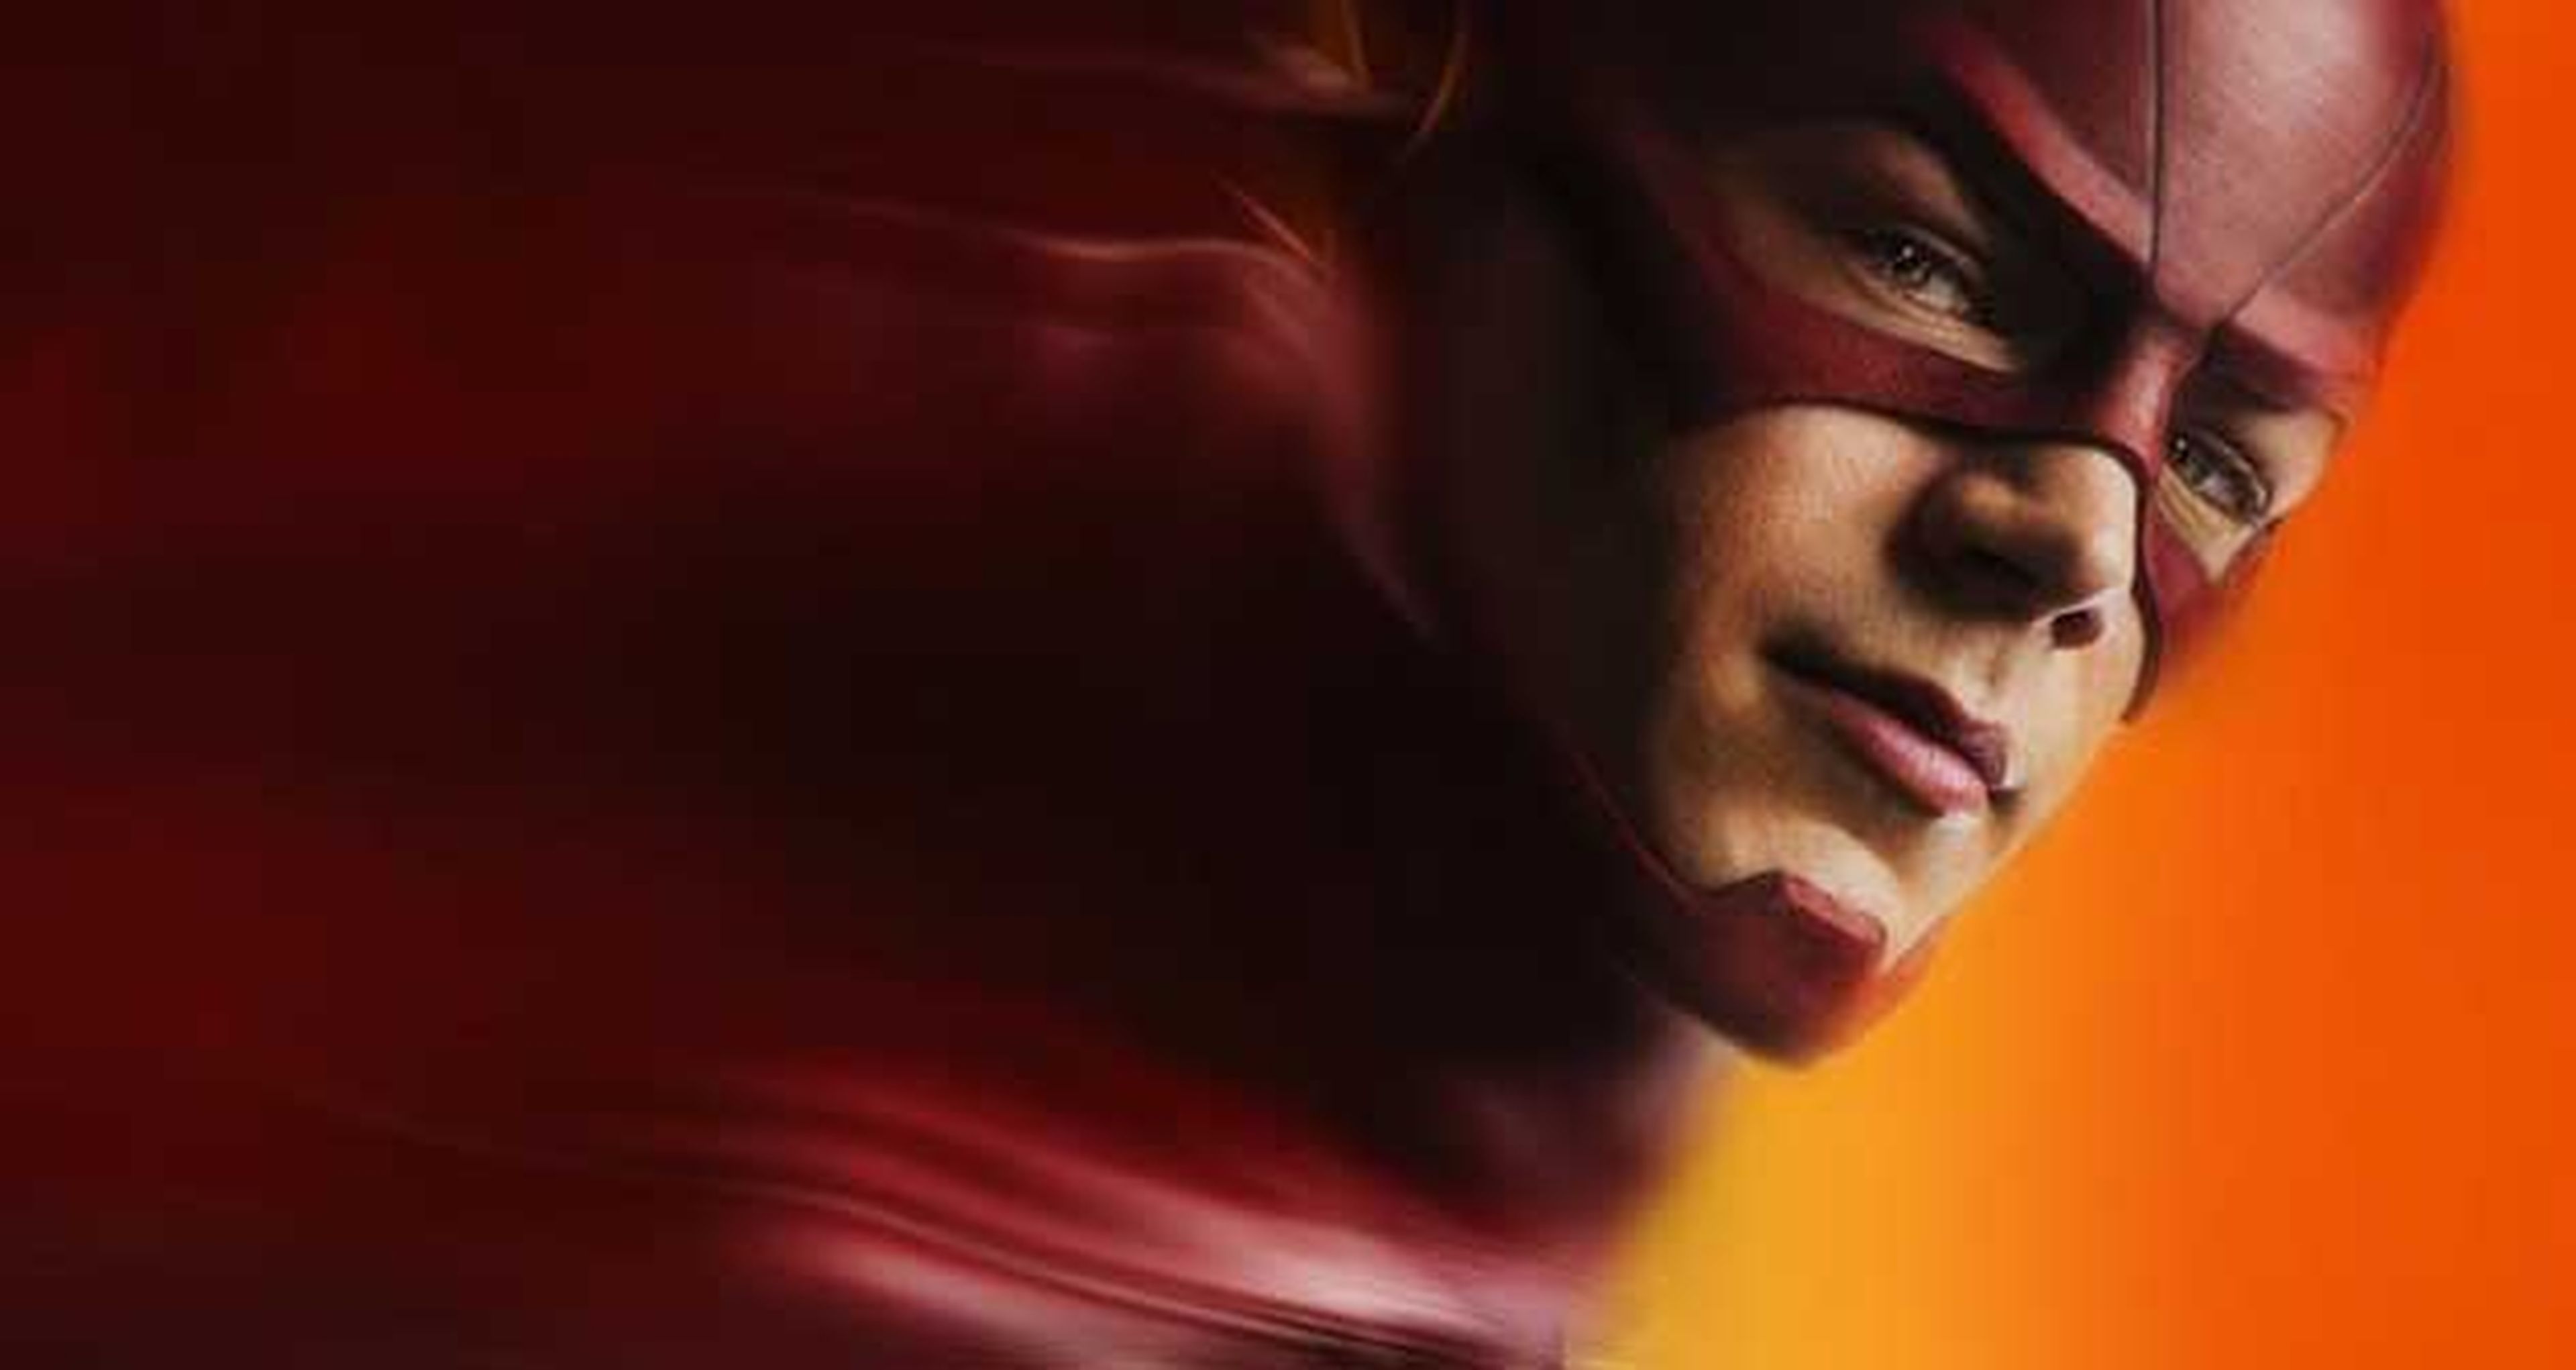 Flash: La Temporada 2 presentará un nuevo villano principal